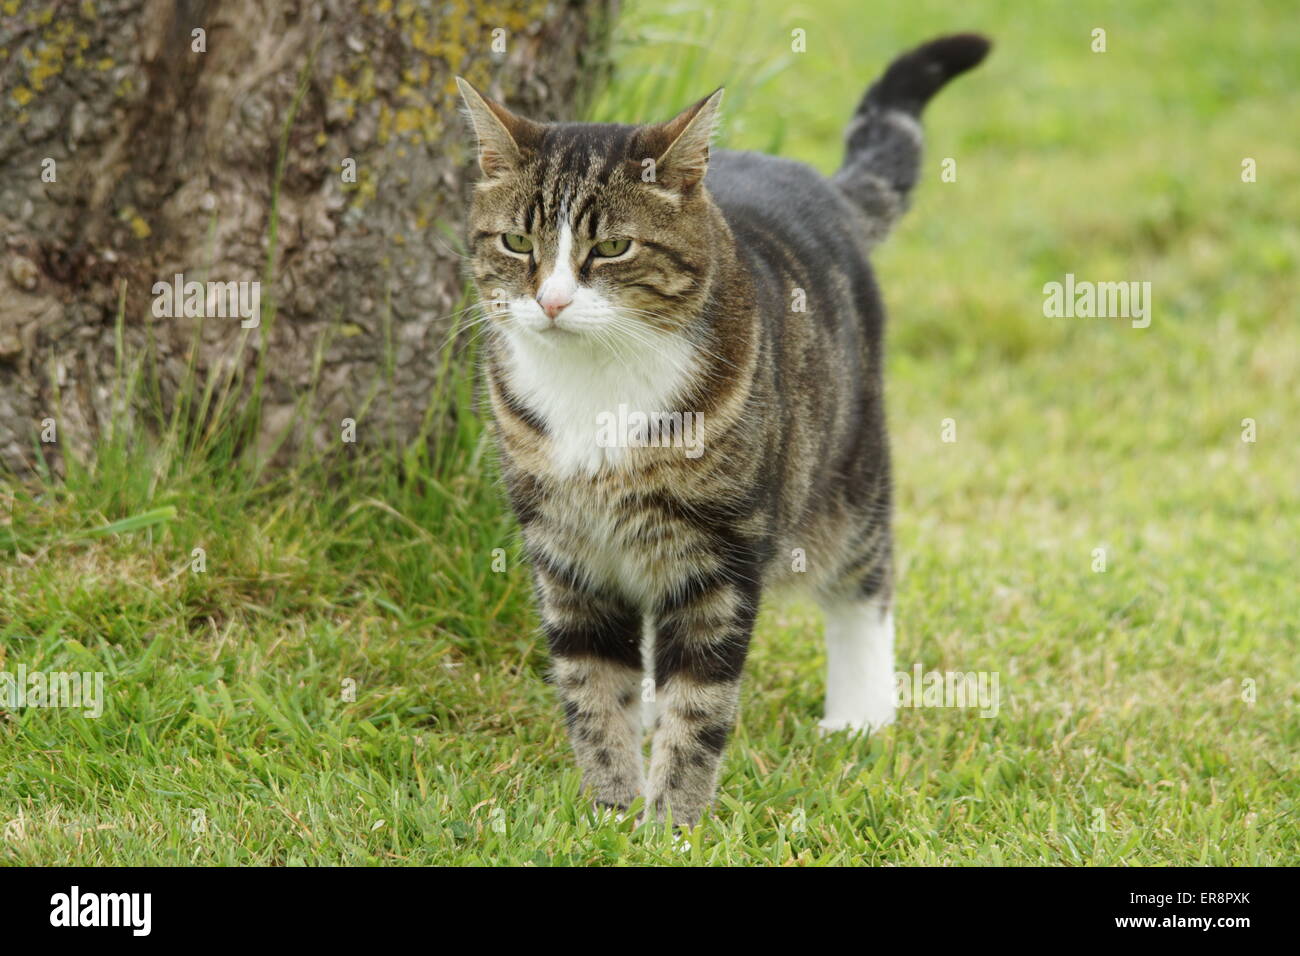 Tabby cat walking towards camera Stock Photo